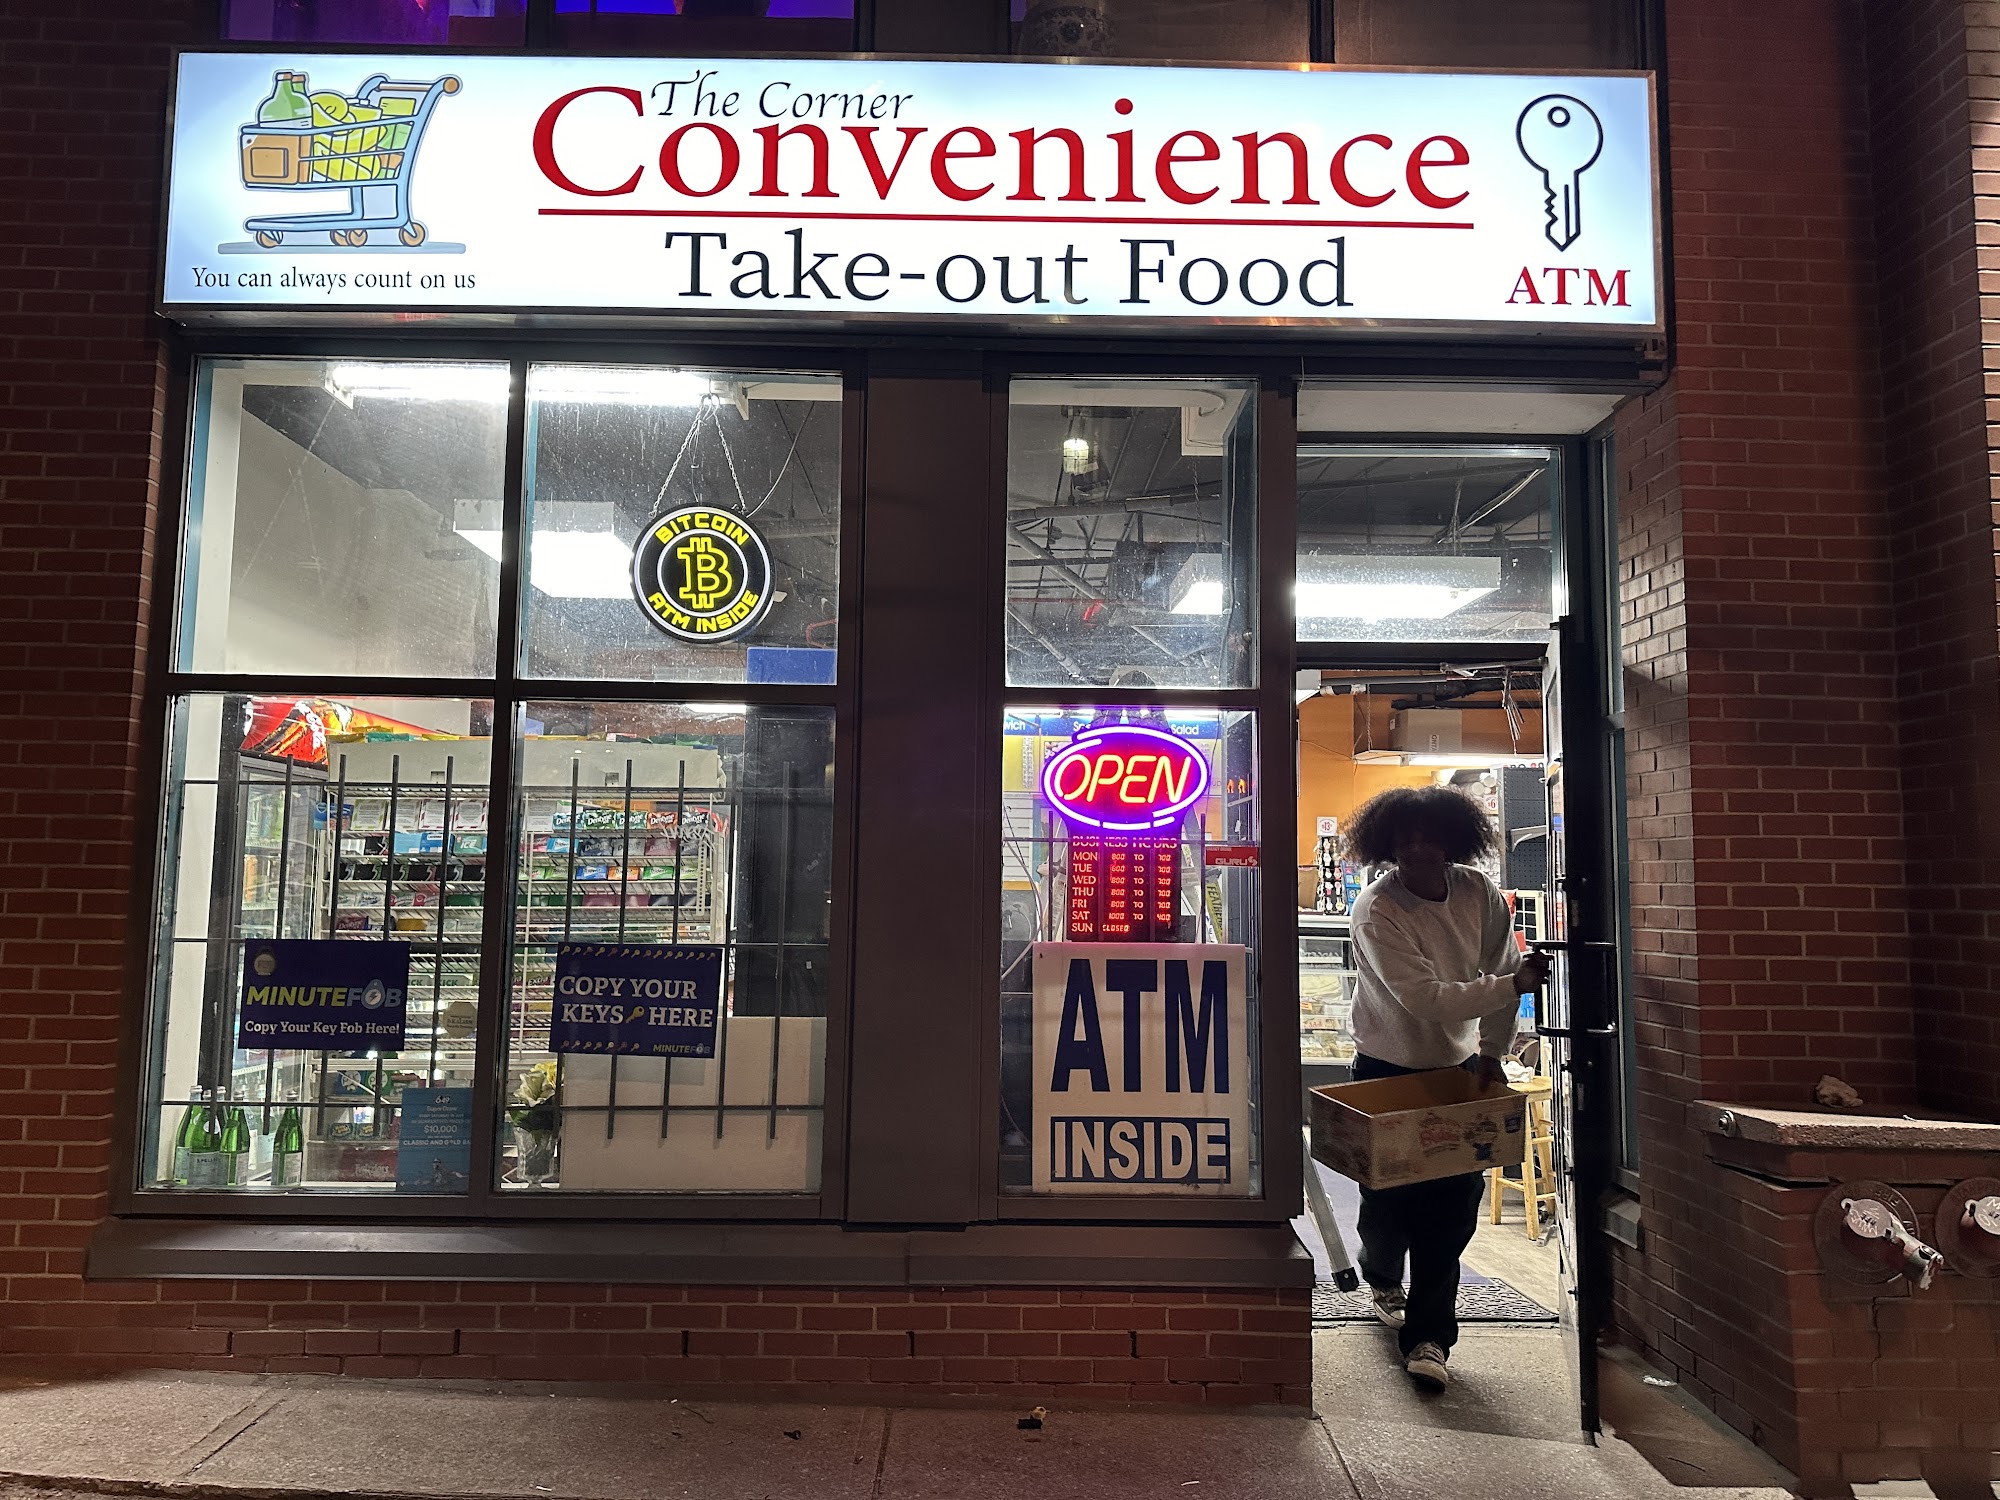 The Corner Convenience